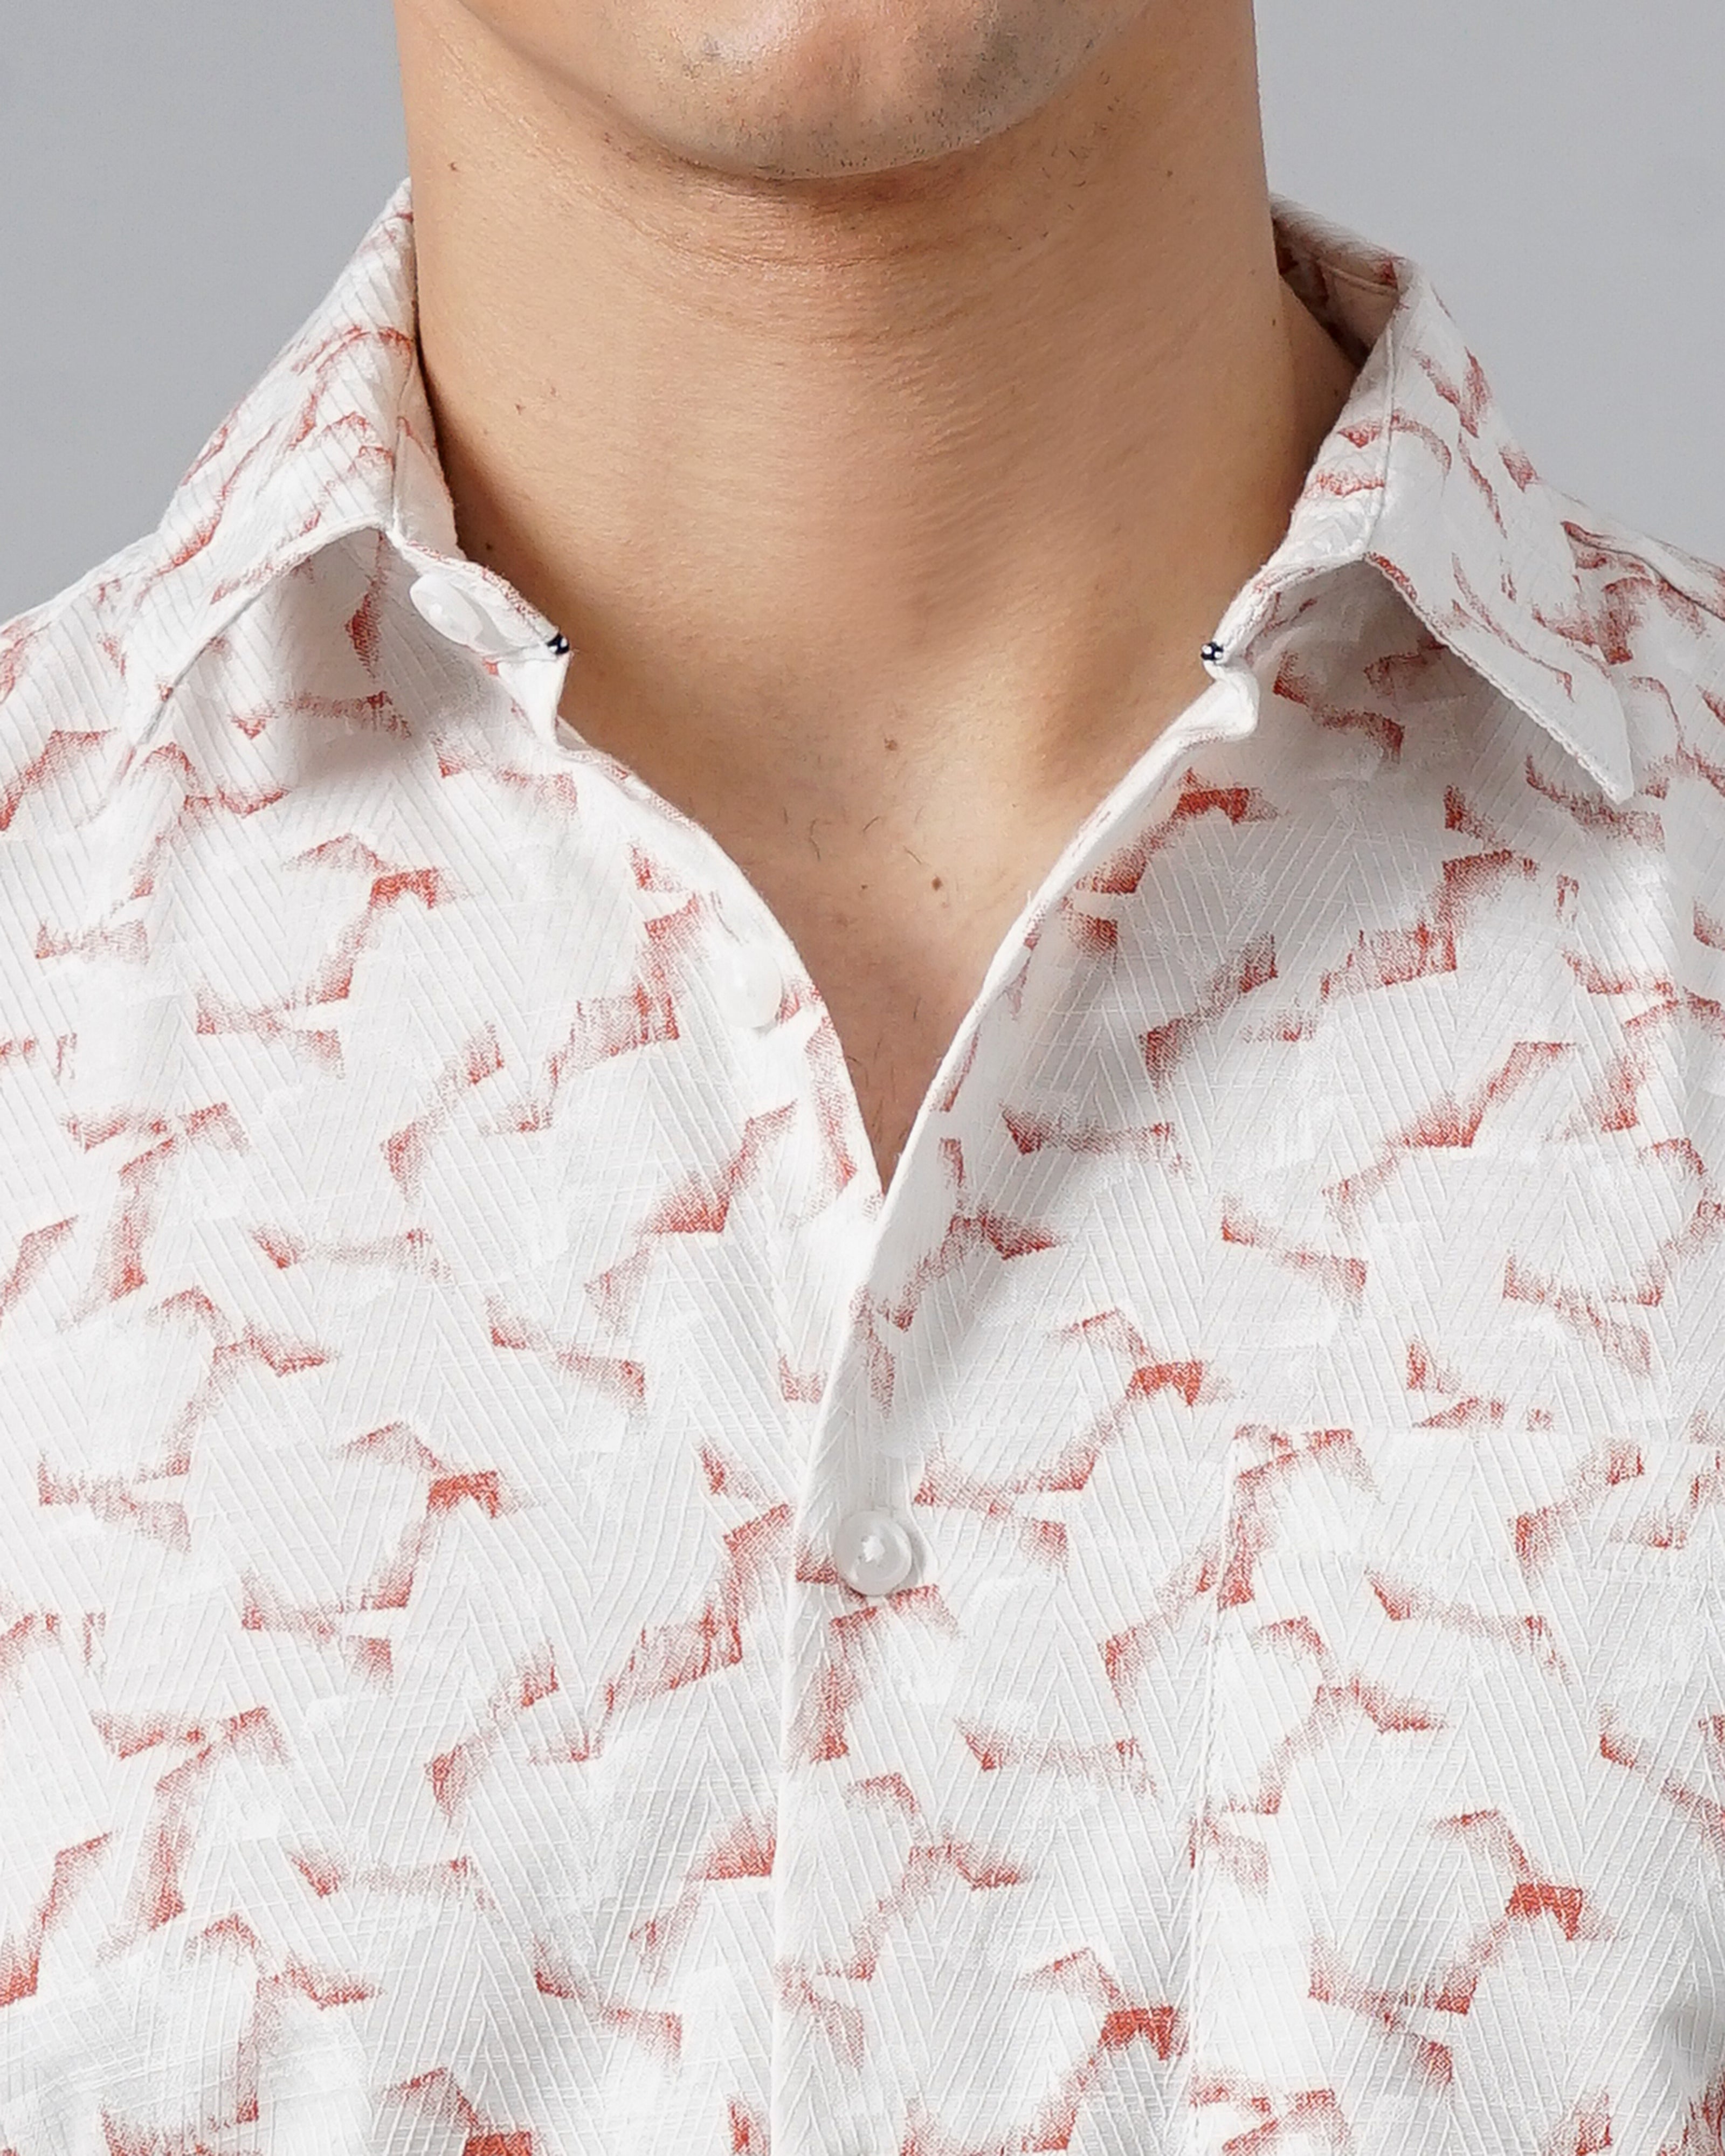 men's printed shirt